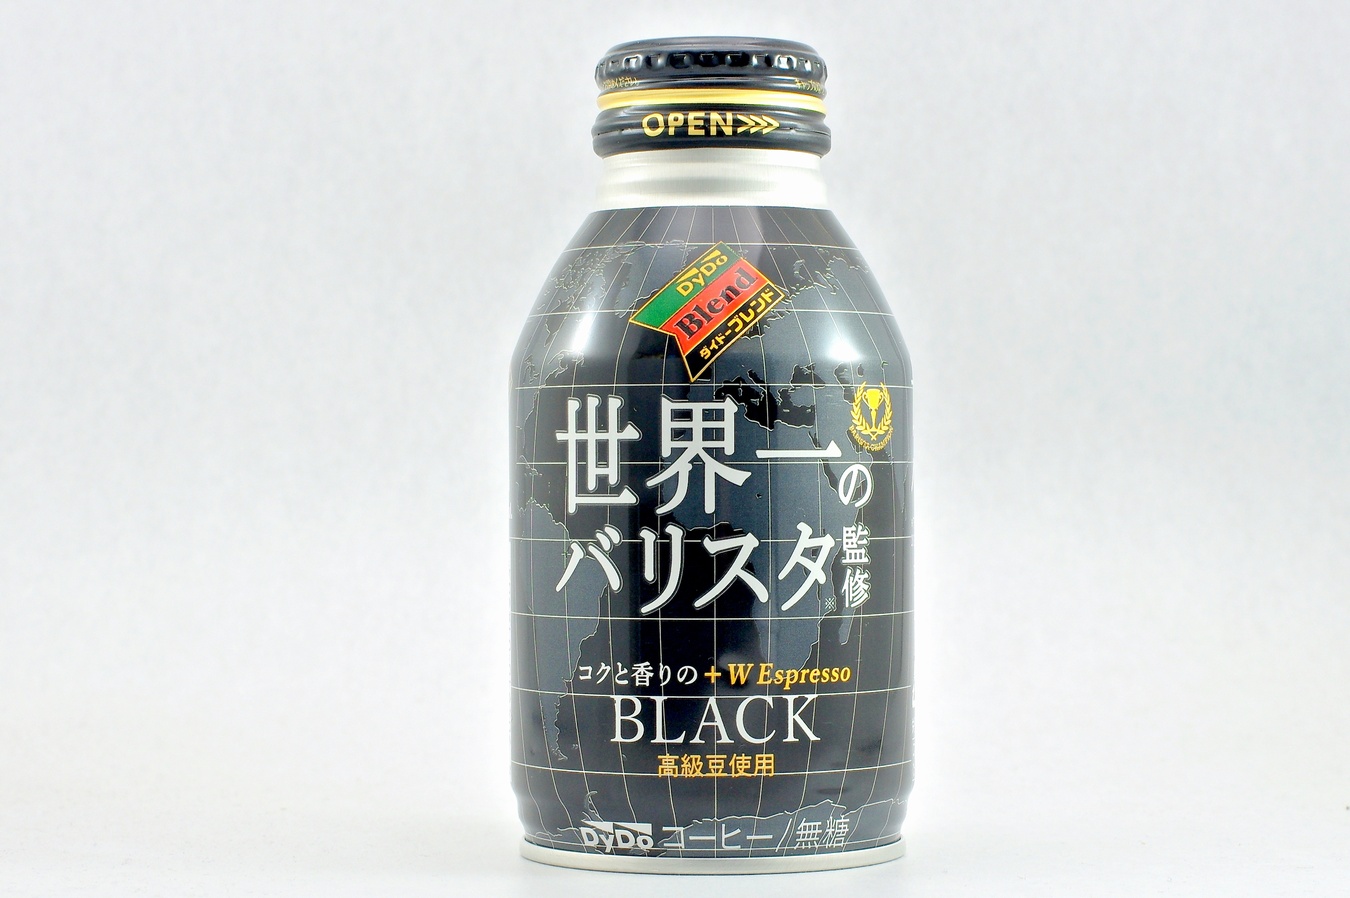 ダイドーブレンド BLACK 世界一のバリスタ監修 275gボトル缶 2015年3月